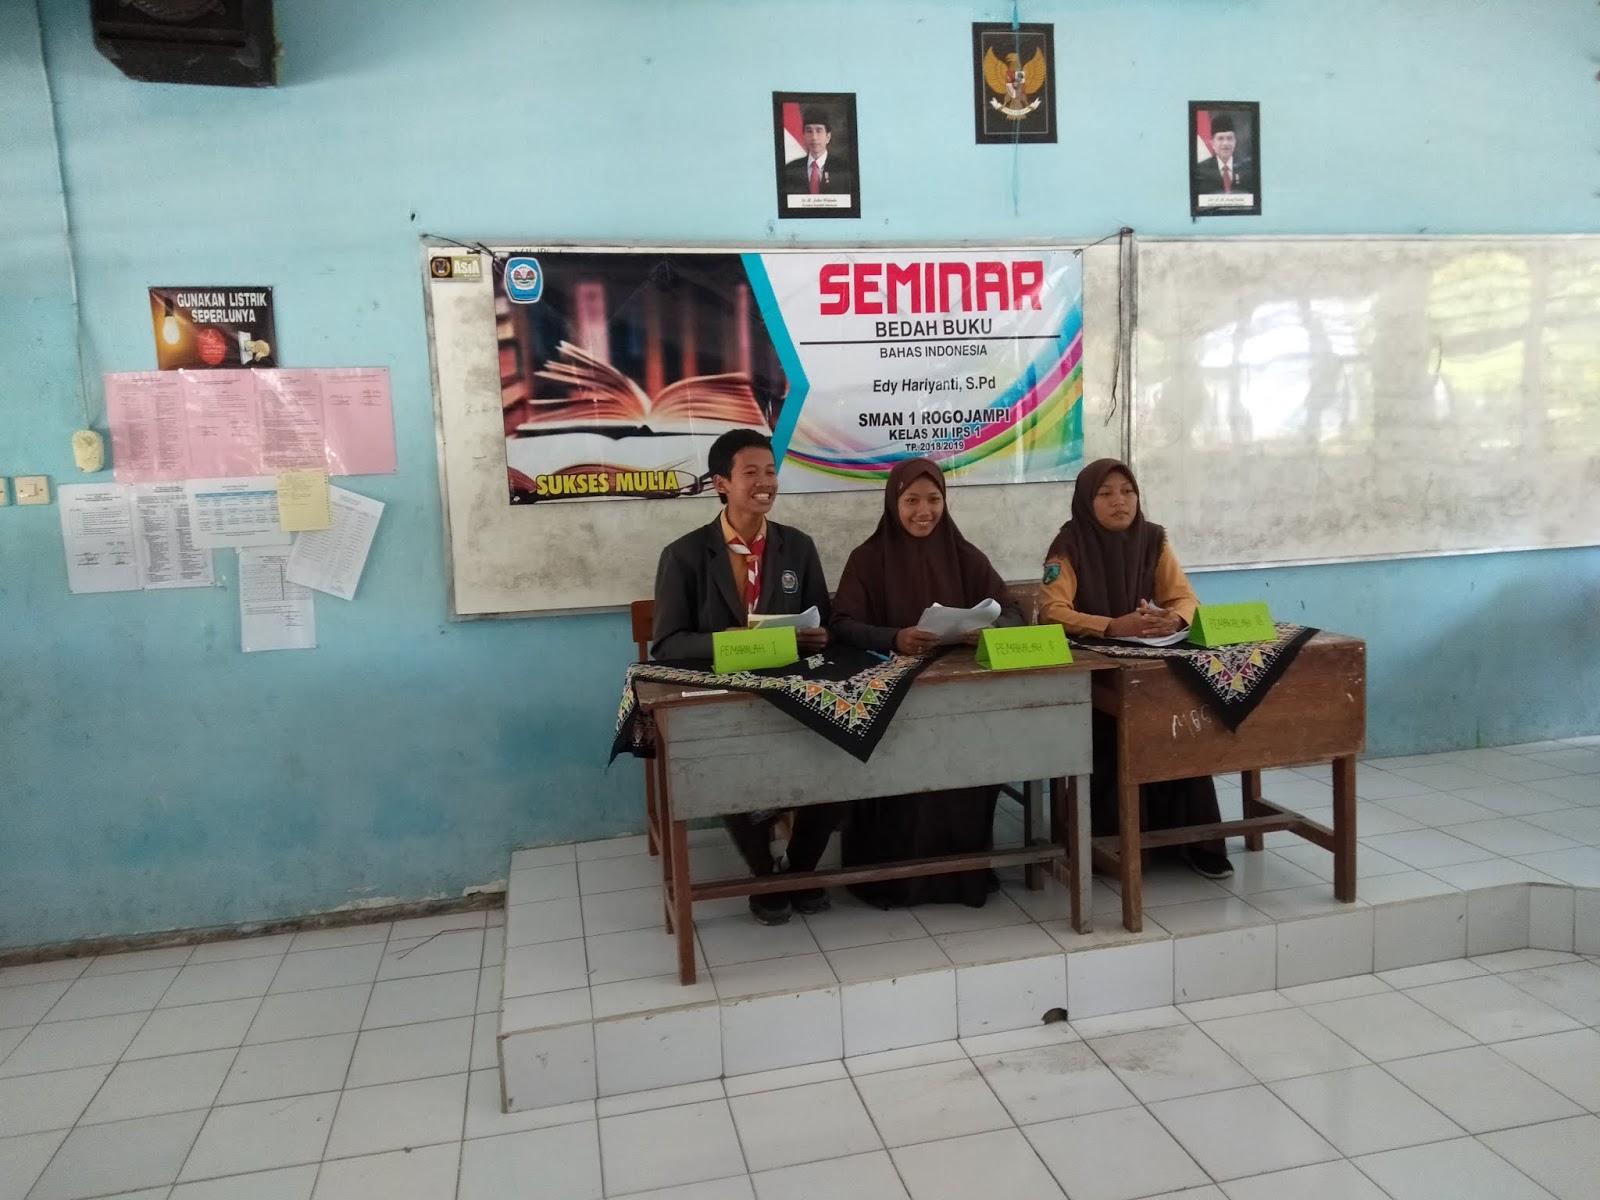 Sabtu 16 03 kelas XII IPS Ujian Praktek Bhs Indonesia dengan melakukan kegiatan bedah buku yang dibimbing oleh Ibu Edy Hariyanti S Pd SMA NEGERI 1